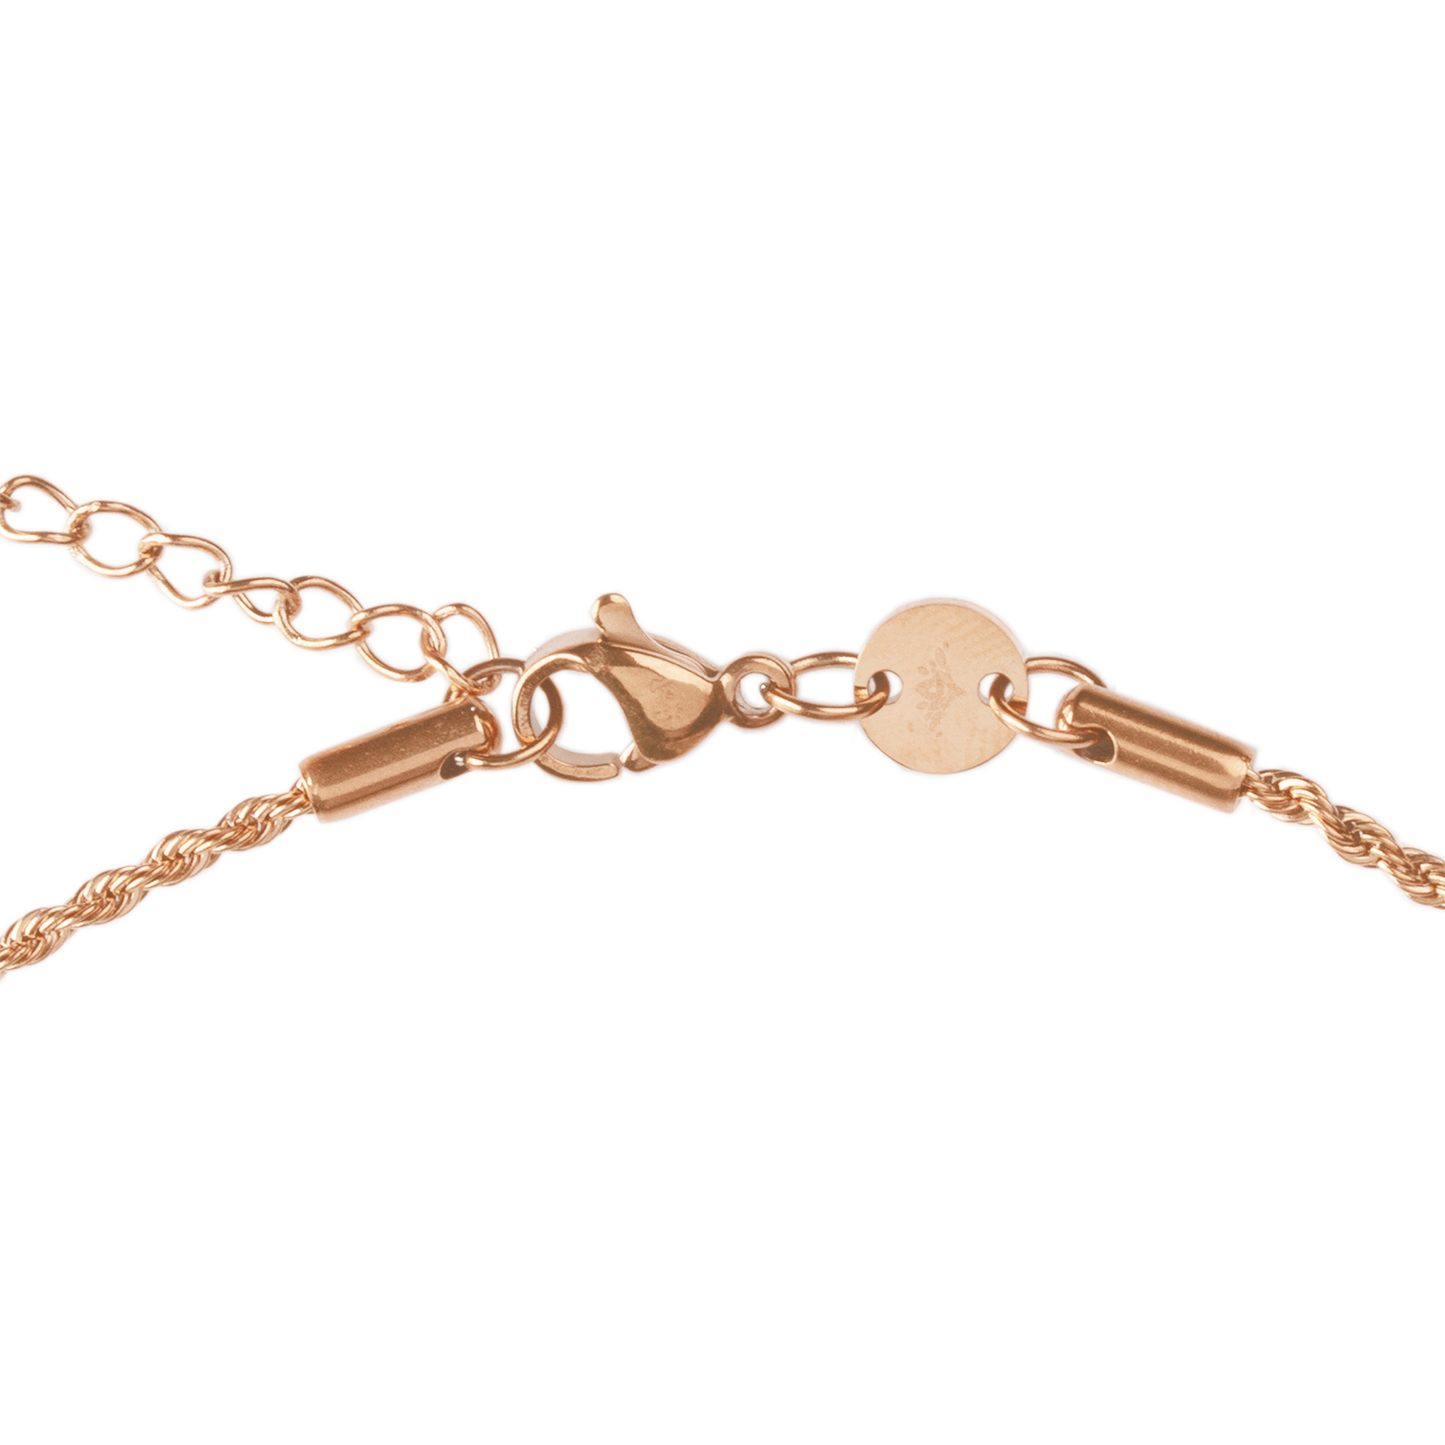 Cancer Necklace Rose Gold